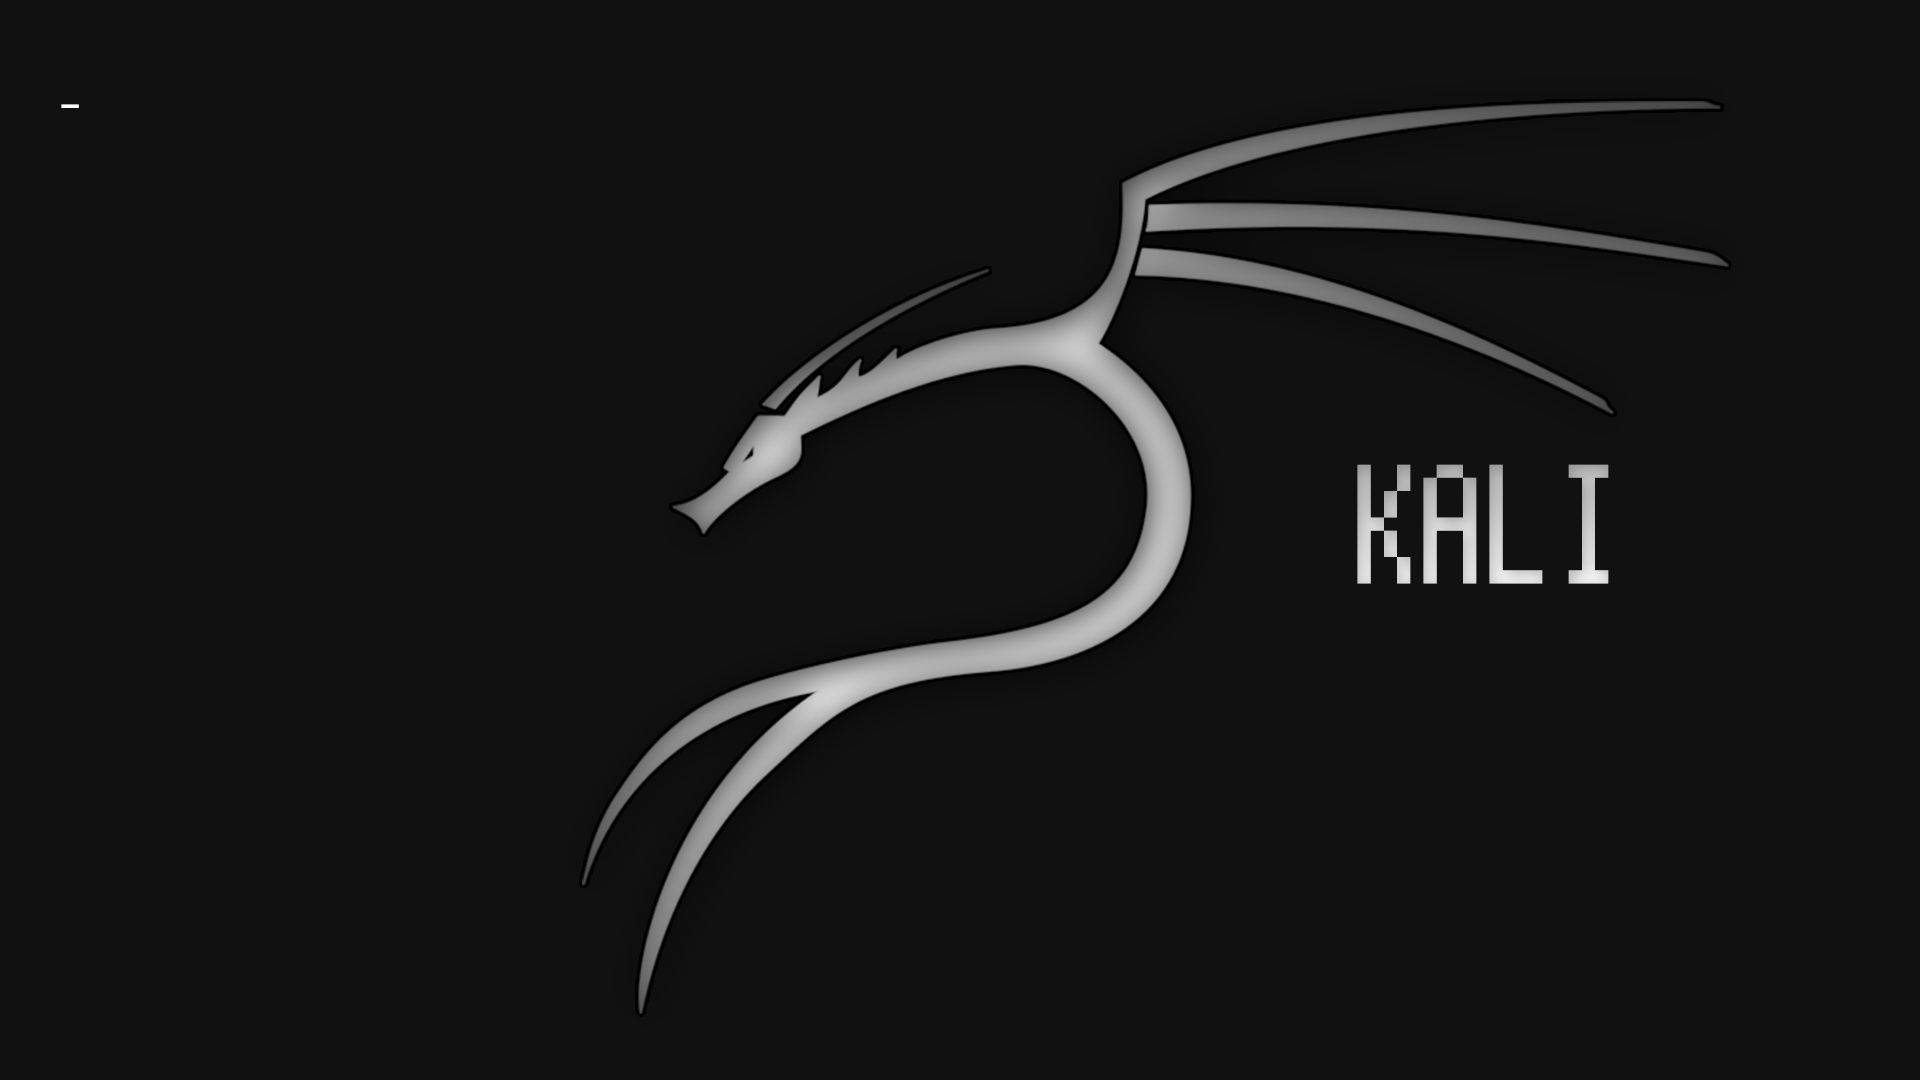 Black & White Kali Linux